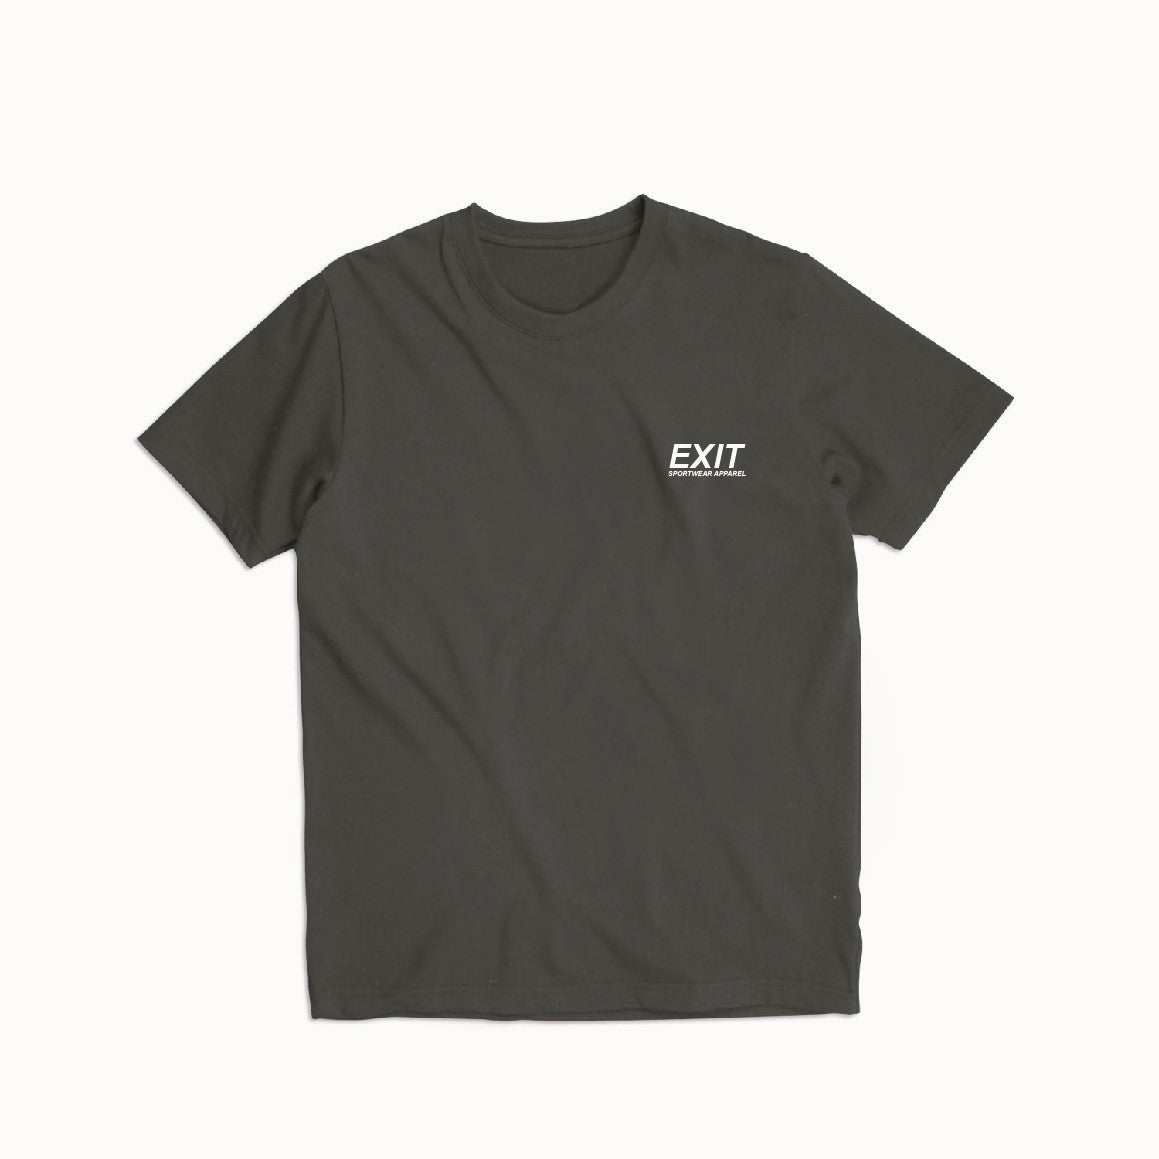 Heavyweight sportswear essential Exit t-shirt